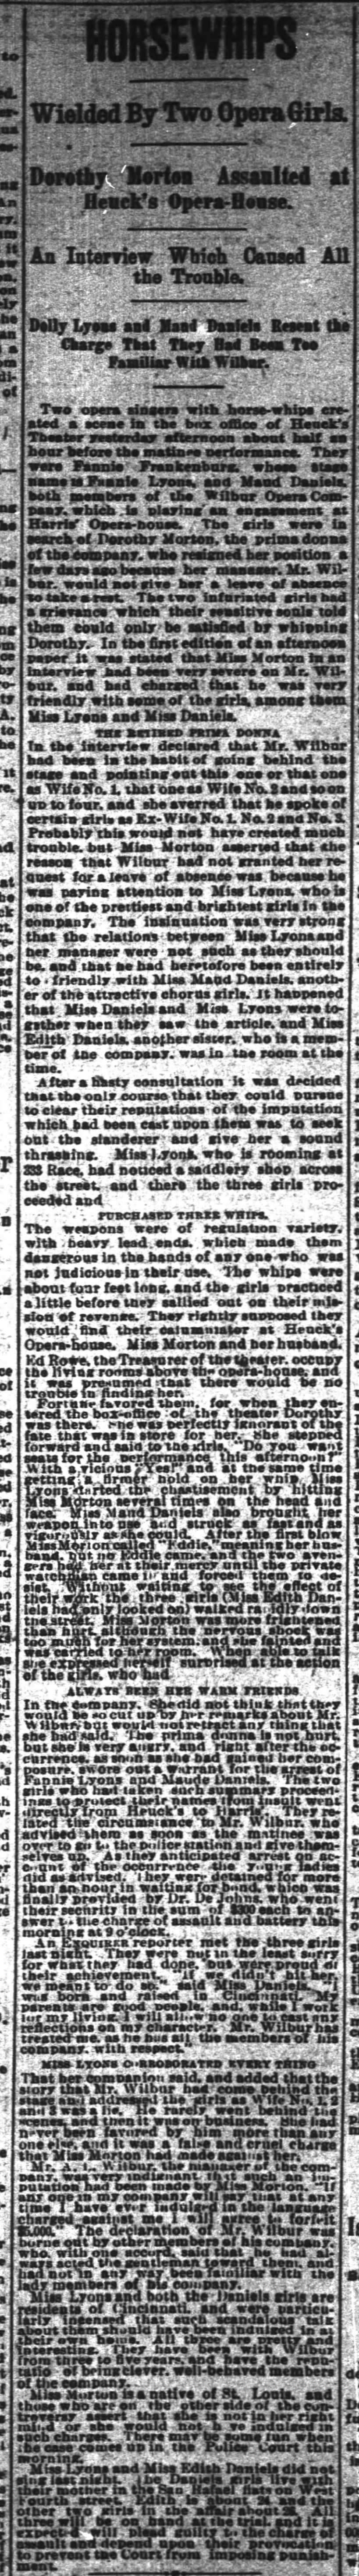 The Cincinnati Enquirer (Cincinnati, Ohio) 02 Nov 1892 page 8
